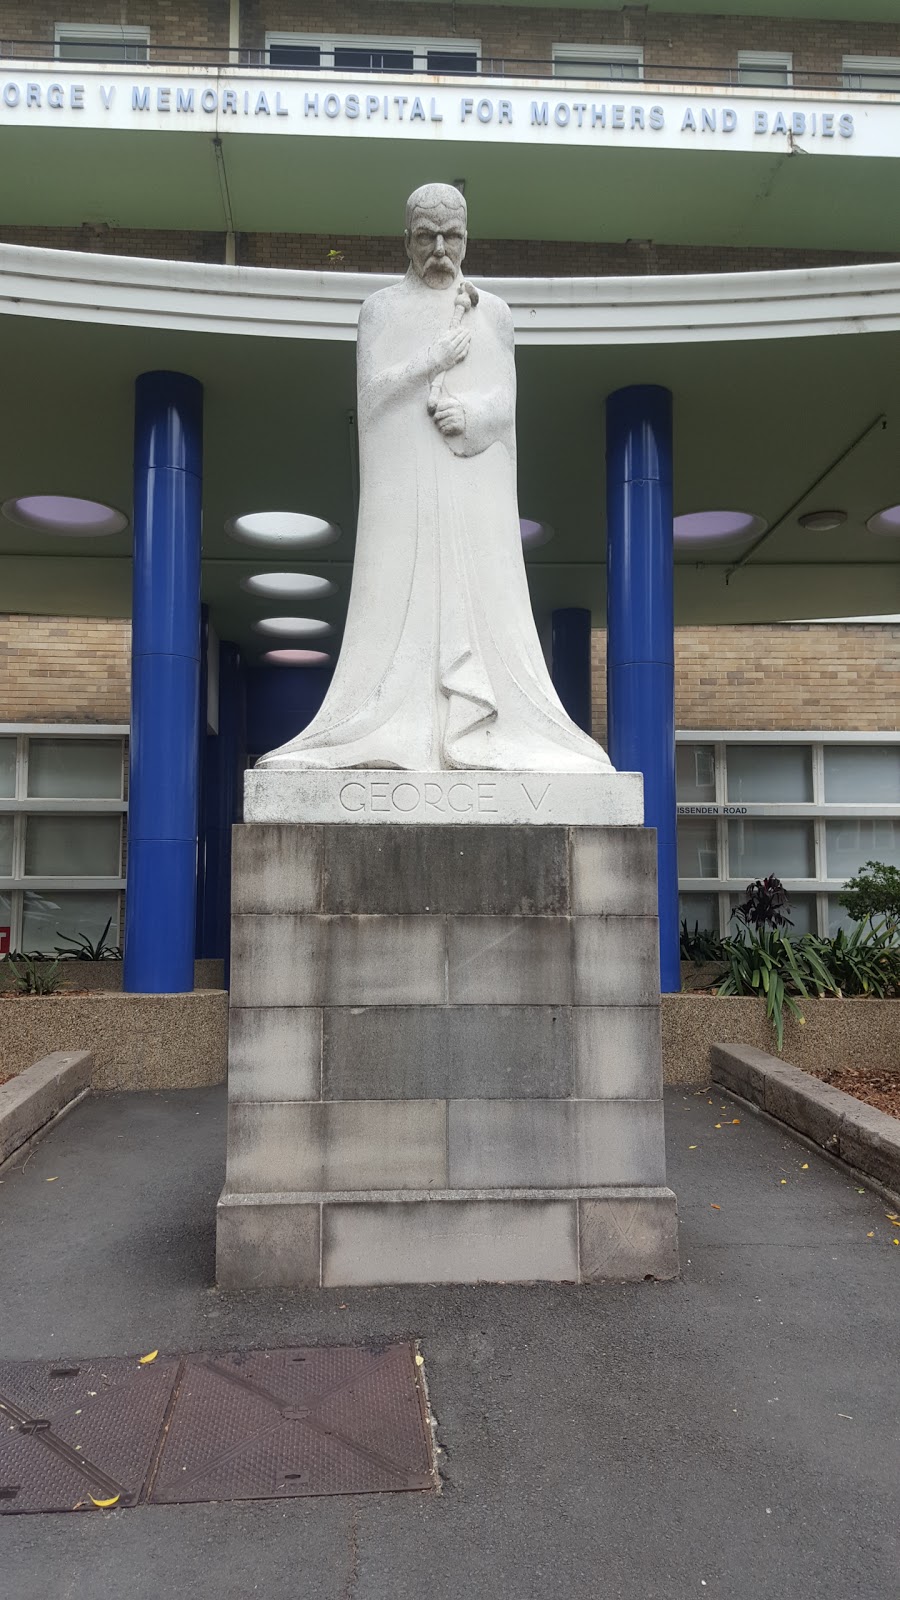 King George V Memorial Hospital for Mothers & Babies | hospital | 83-117 Missenden Rd, Camperdown NSW 2050, Australia | 0295156111 OR +61 2 9515 6111